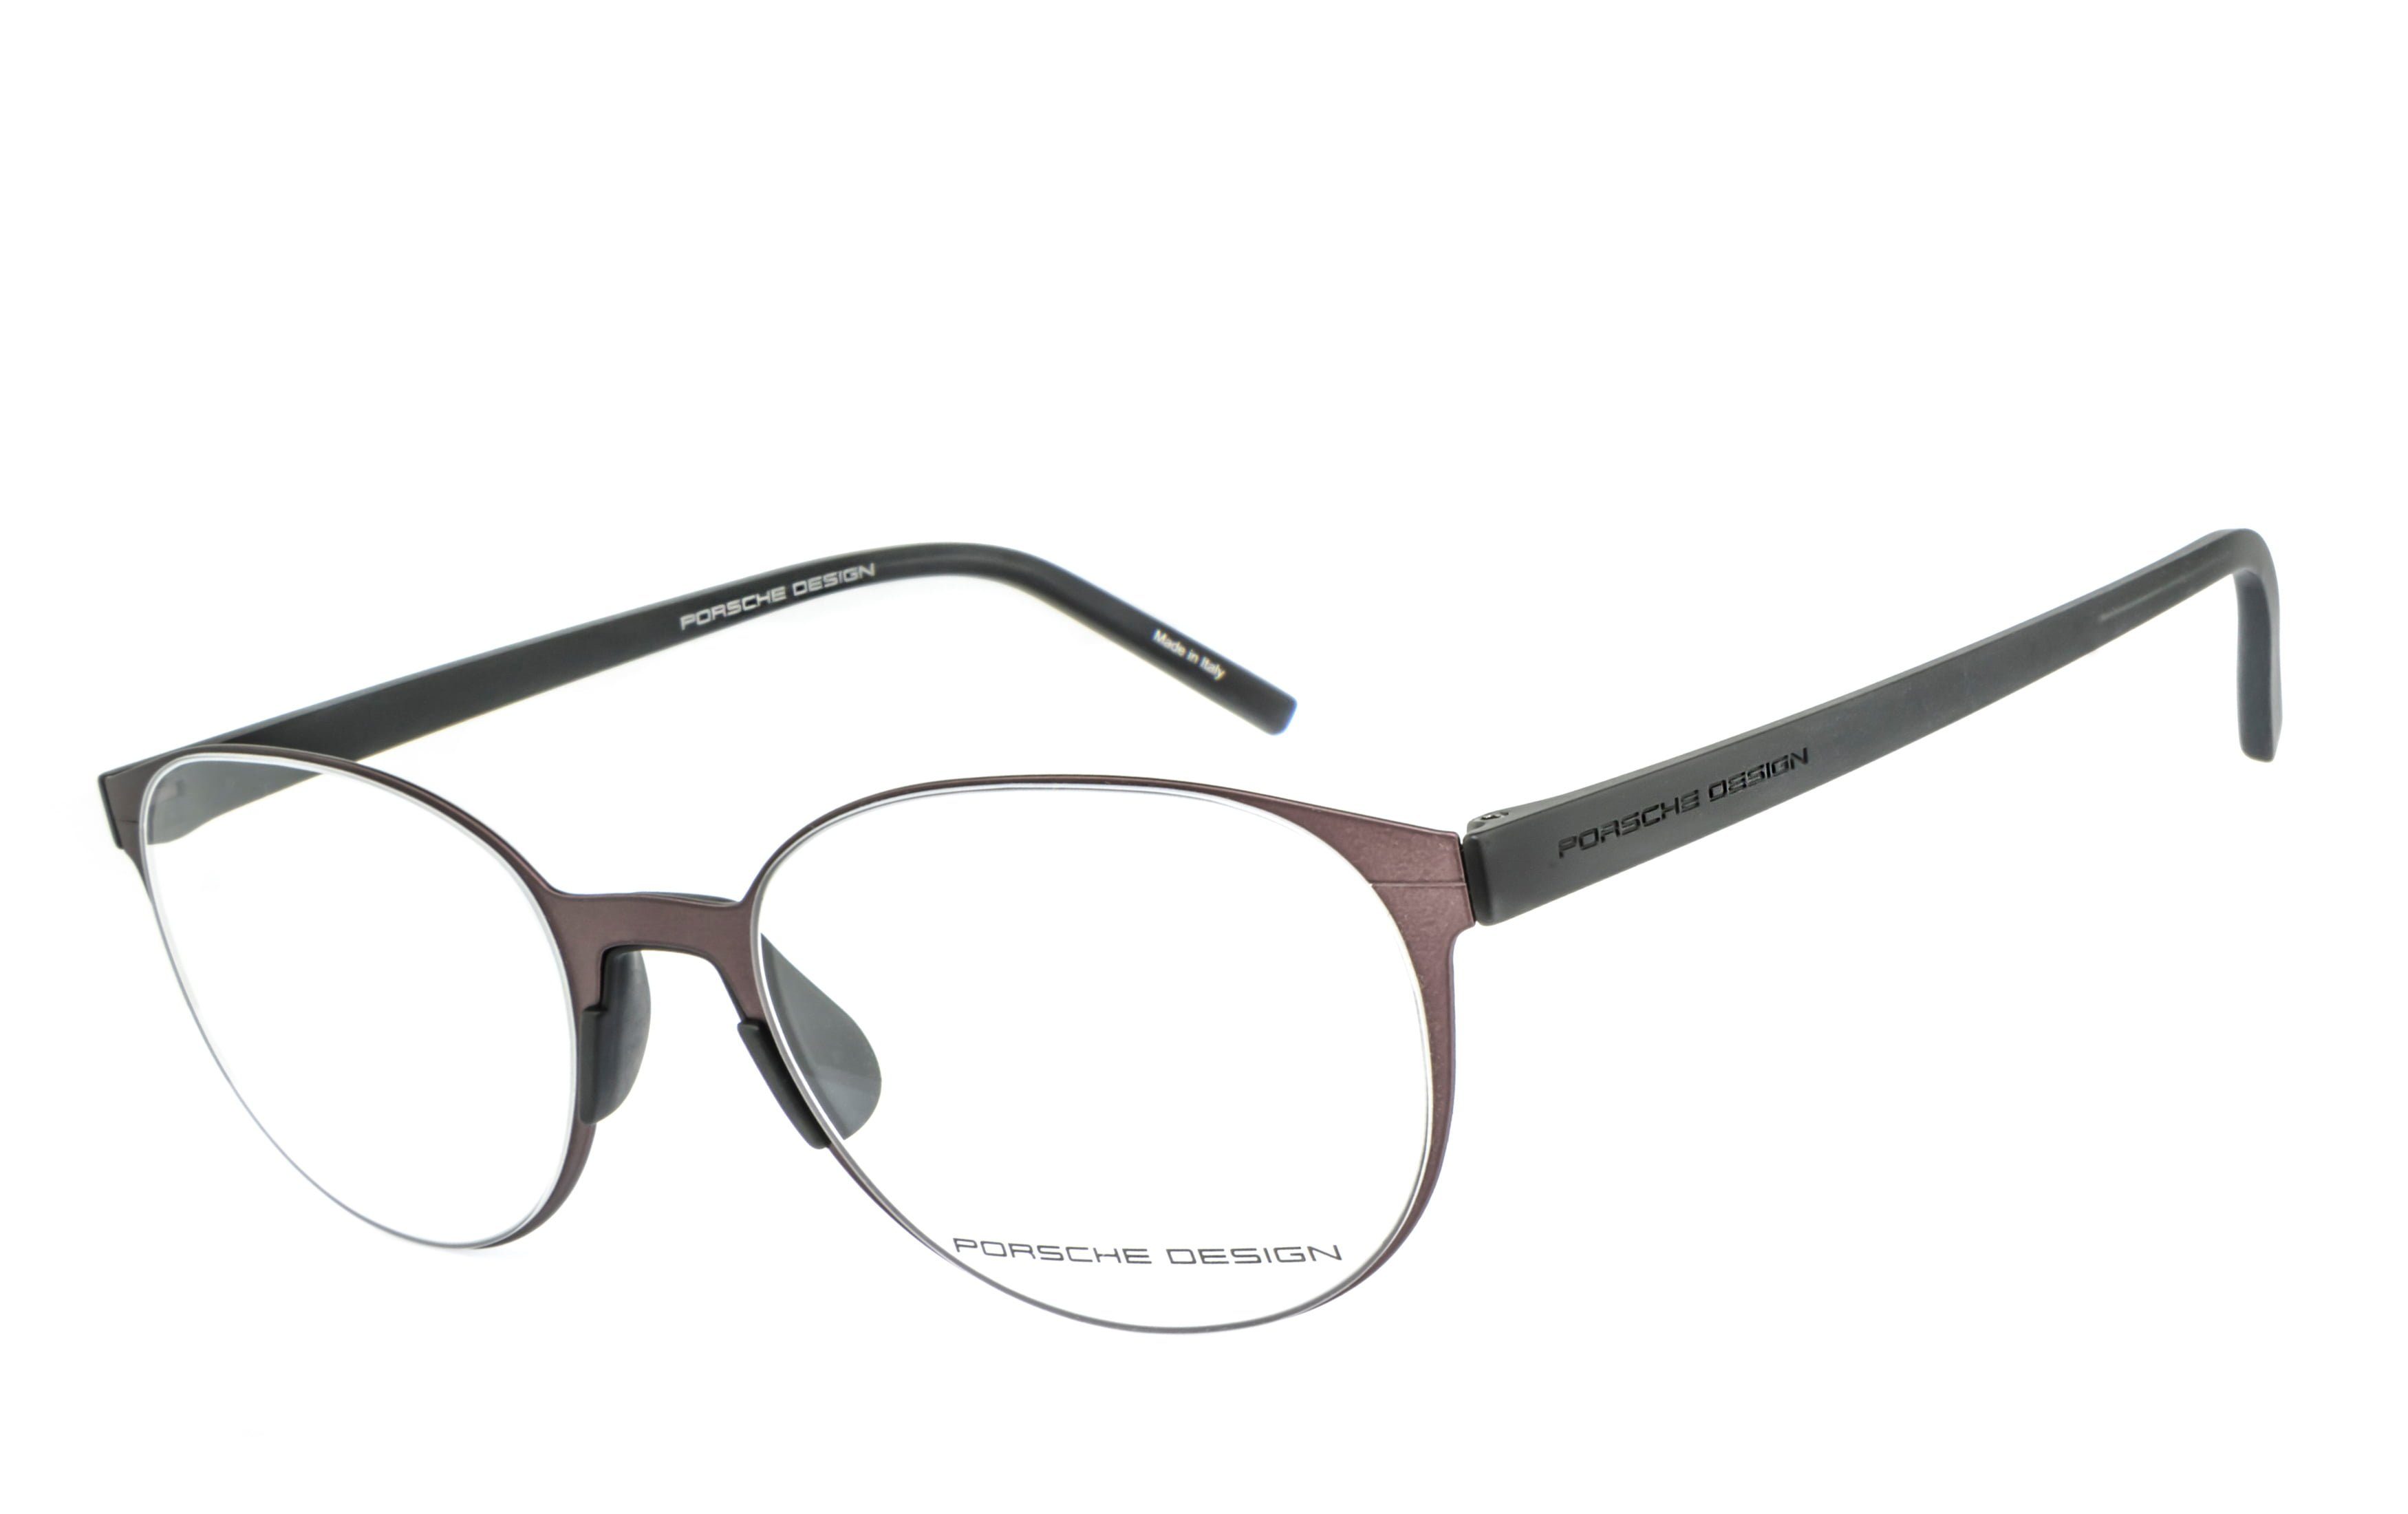 Bildschirmbrille, Brille Blaulichtfilter PORSCHE Brille, Brille, Gamingbrille, Bürobrille, ohne Sehstärke Design Blaulicht